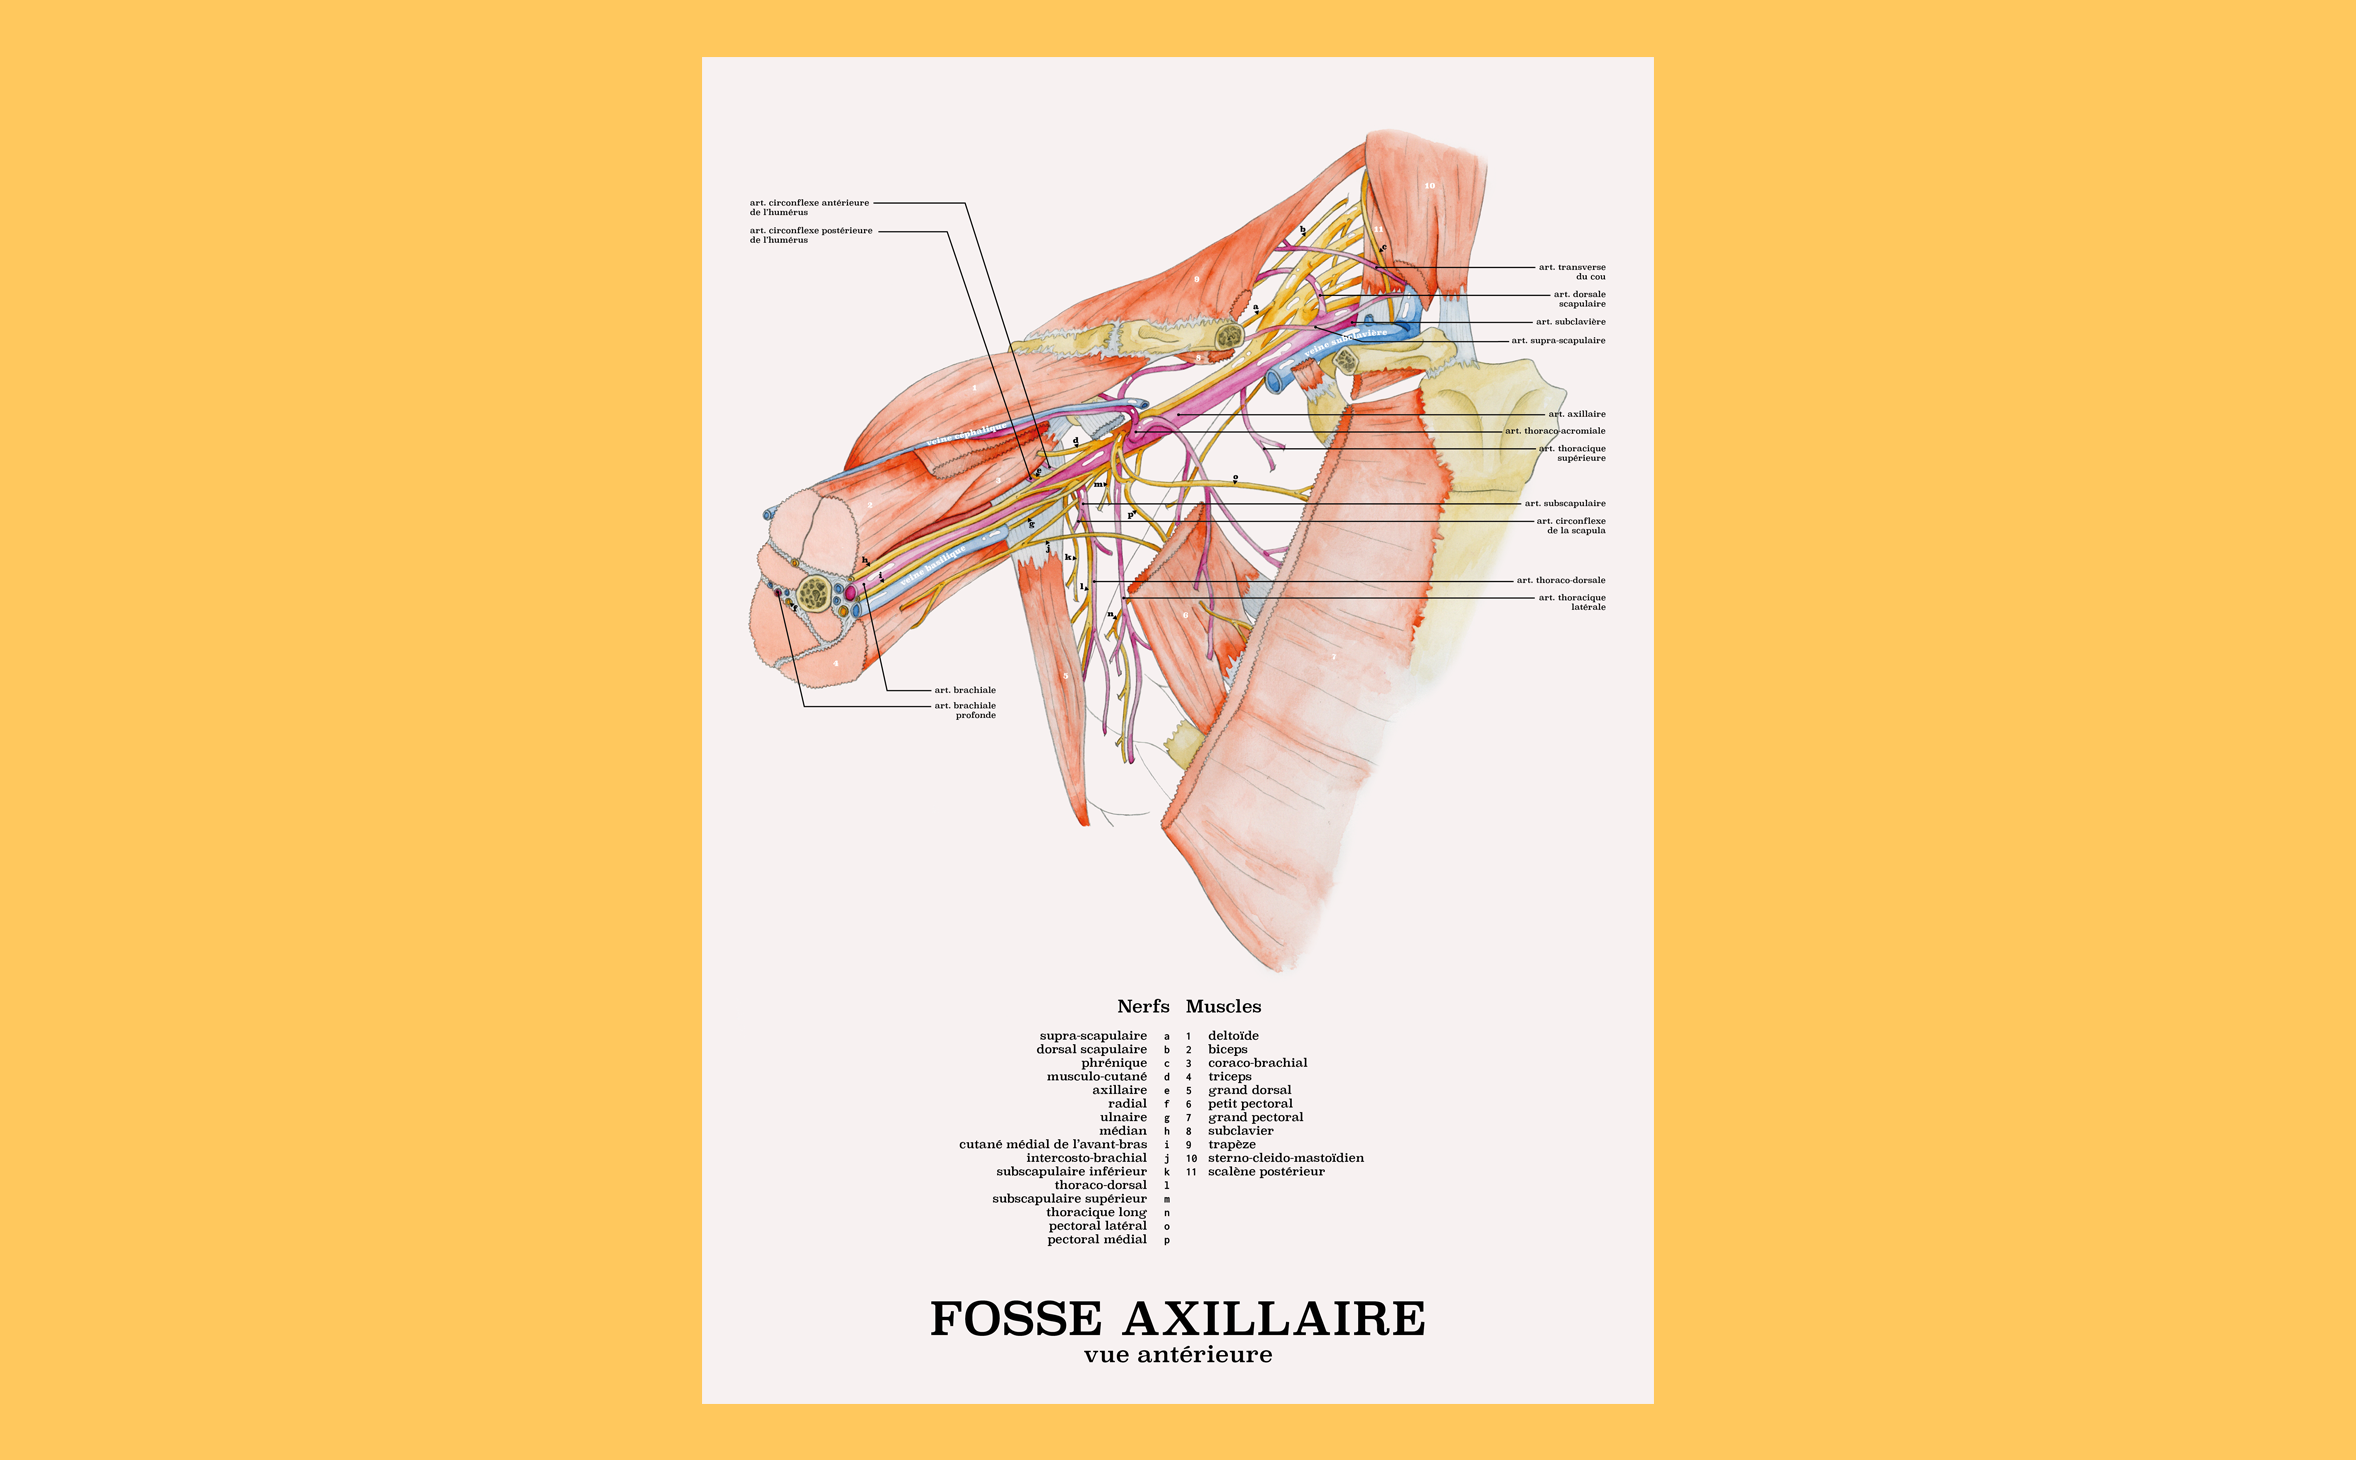 Anatomy illustration of the axillary fossa